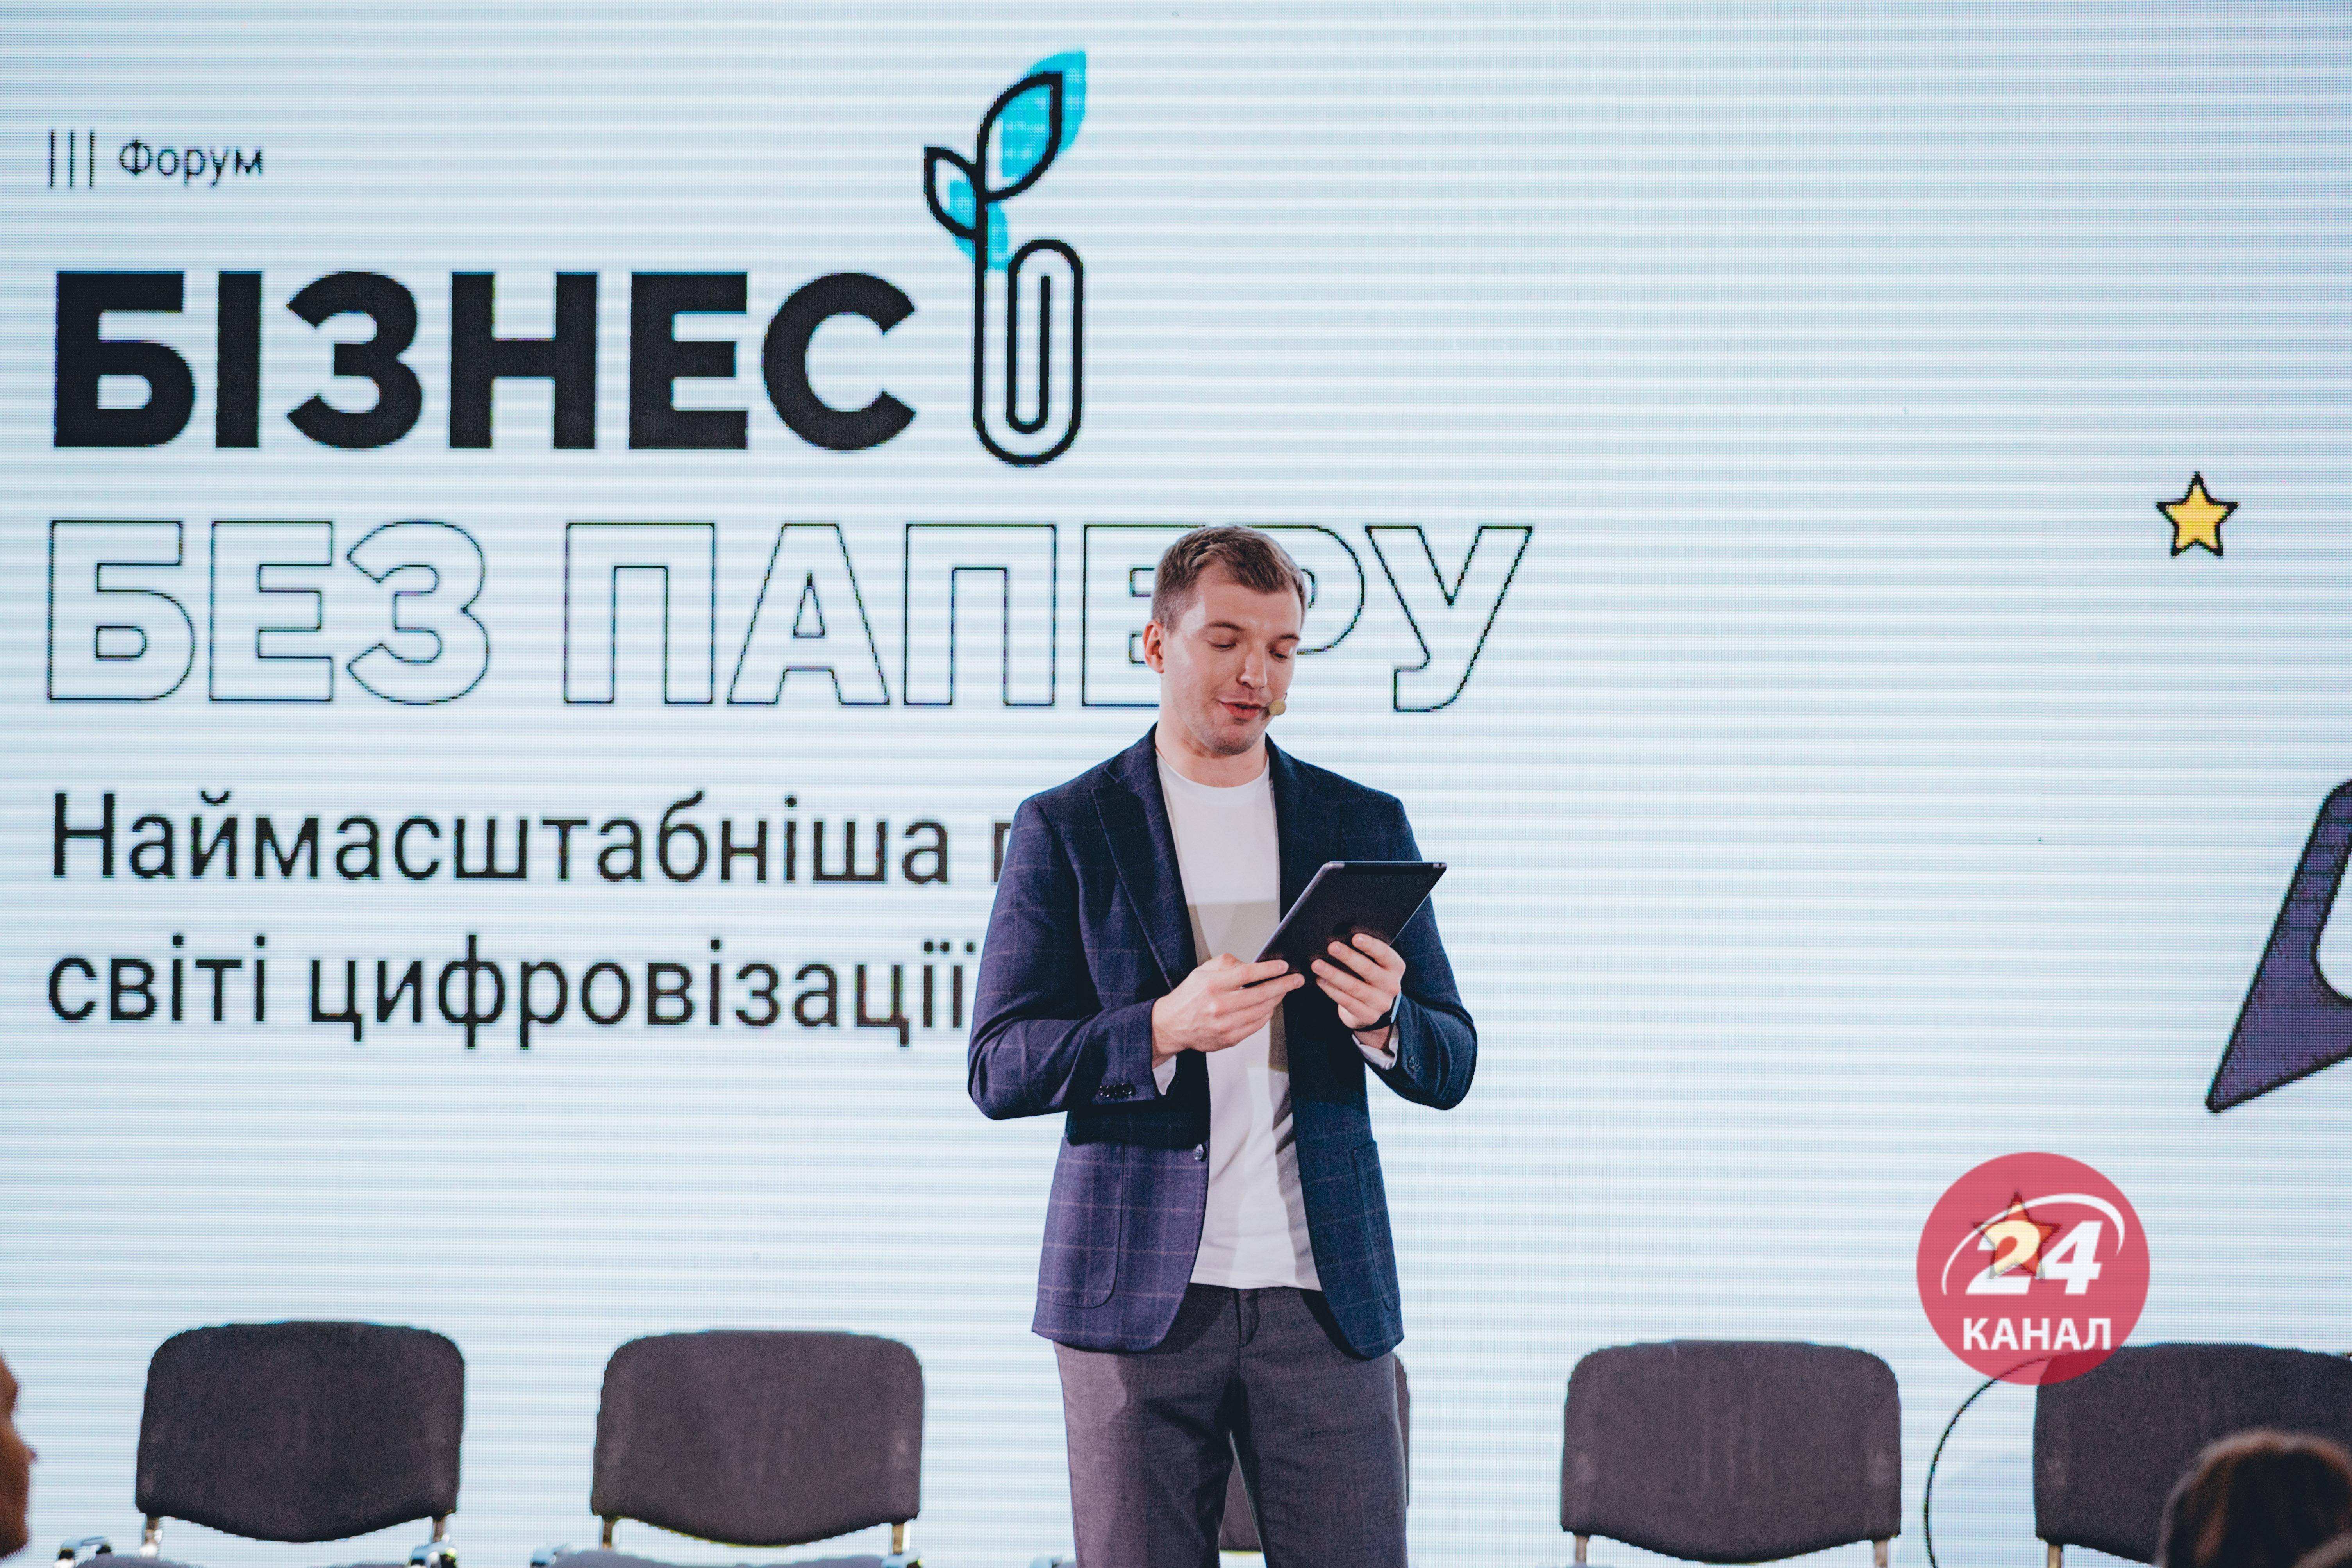 Всеукраинский форум Бізнес без паперу состоялся 19 и 23 ноября в Киеве